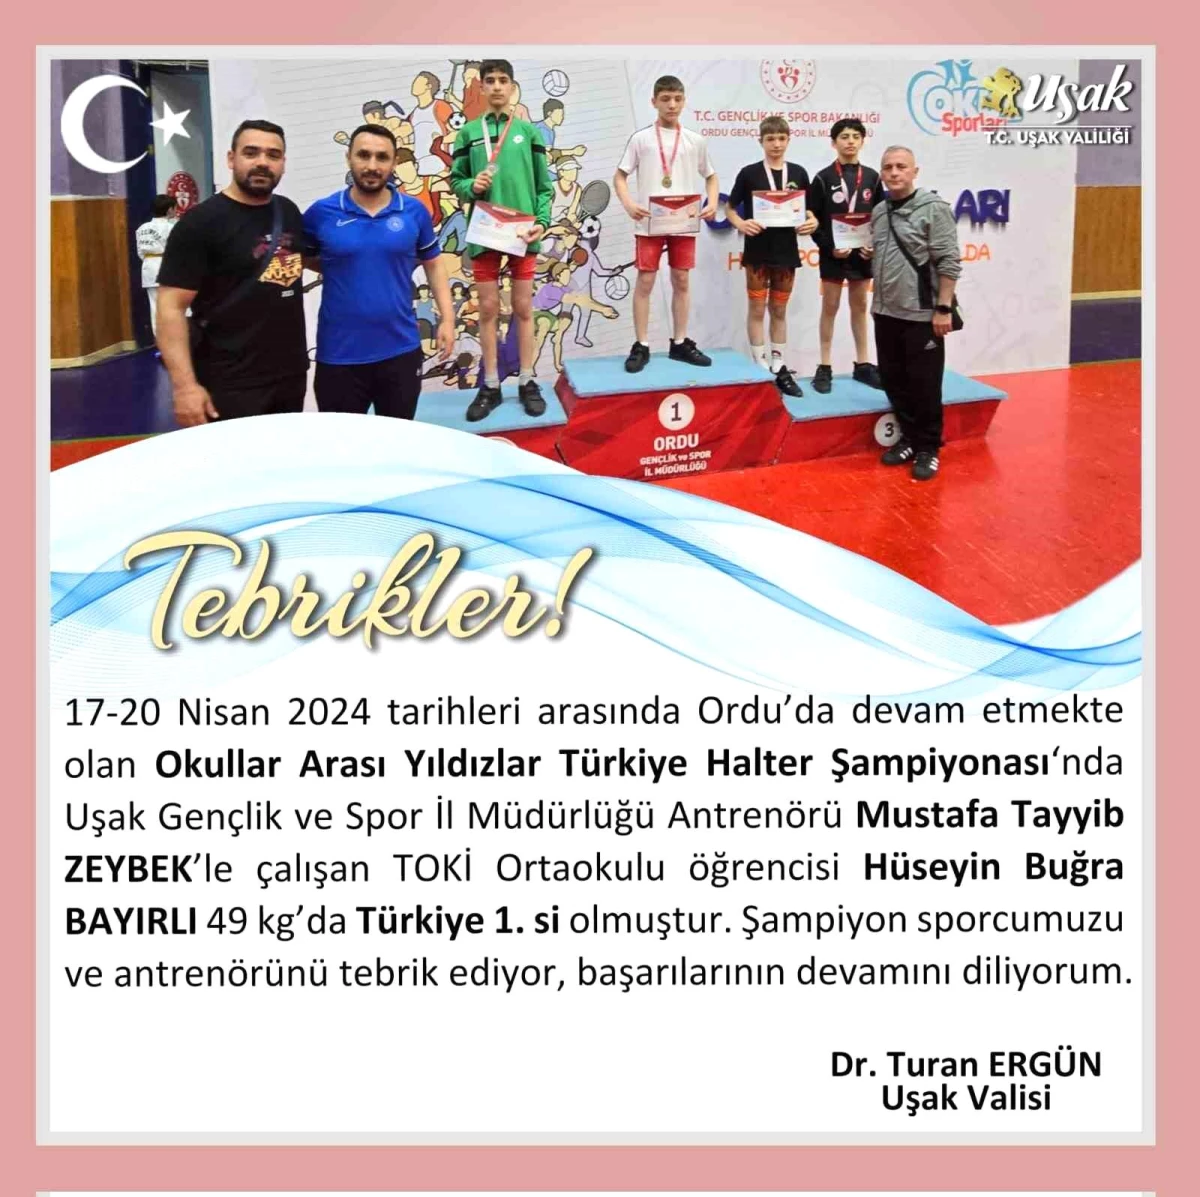 Uşak Valisi, Türkiye Şampiyonu olan sporcu için tebrik mesajı yayımladı